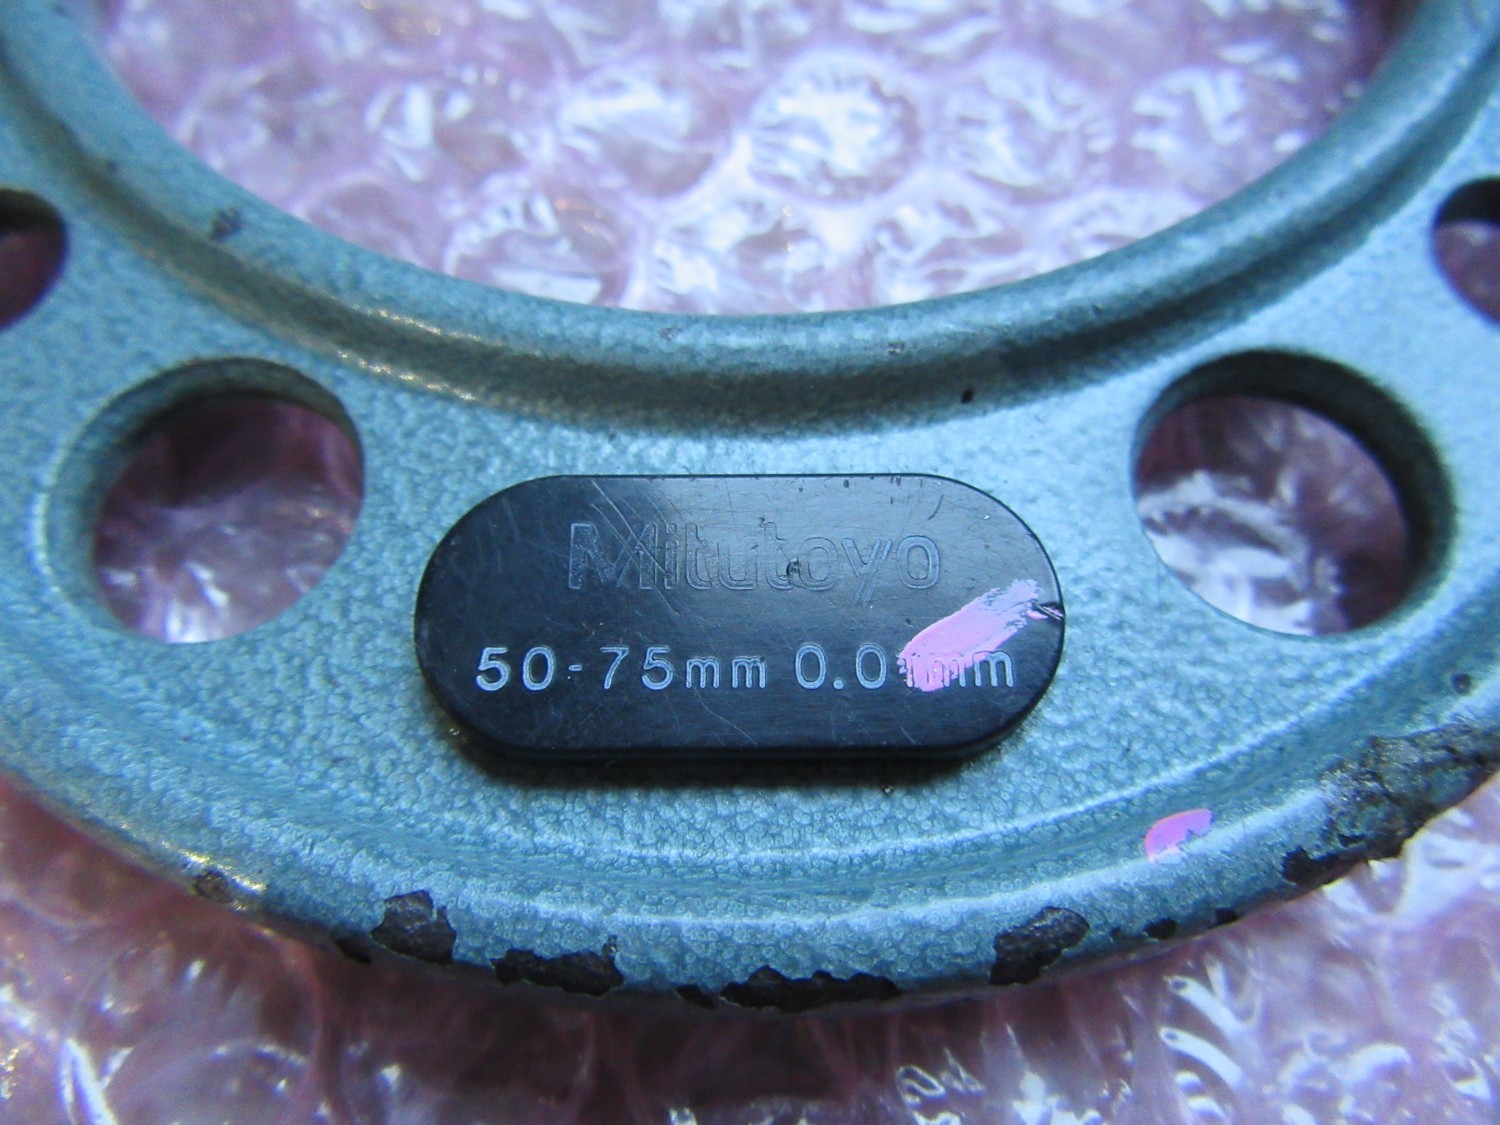 中古Outside micrometer 【外側マイクロメーター】測定範囲:50-75mm 目量:0.01mm Mitutoyo